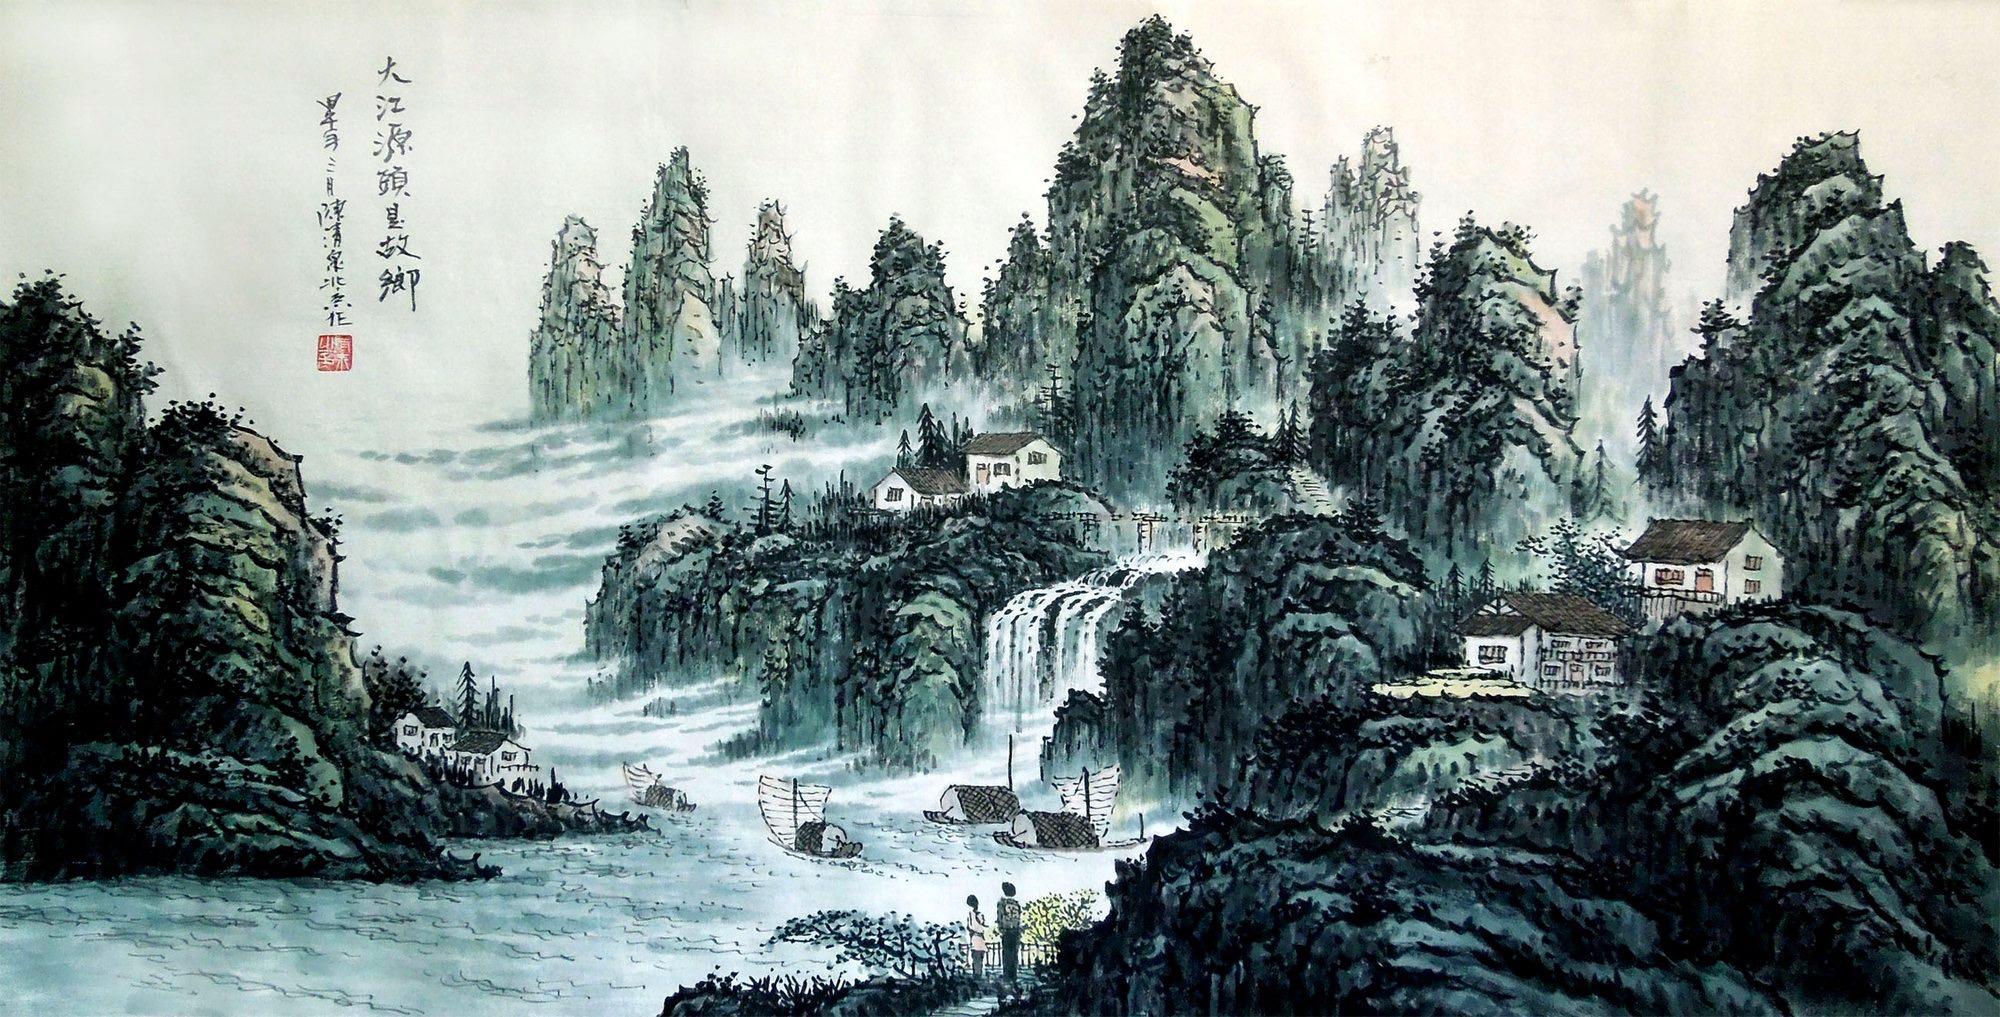 邱汉桥富润艺术榜前10名,殿堂画家,南势北气山水画的倡导者.